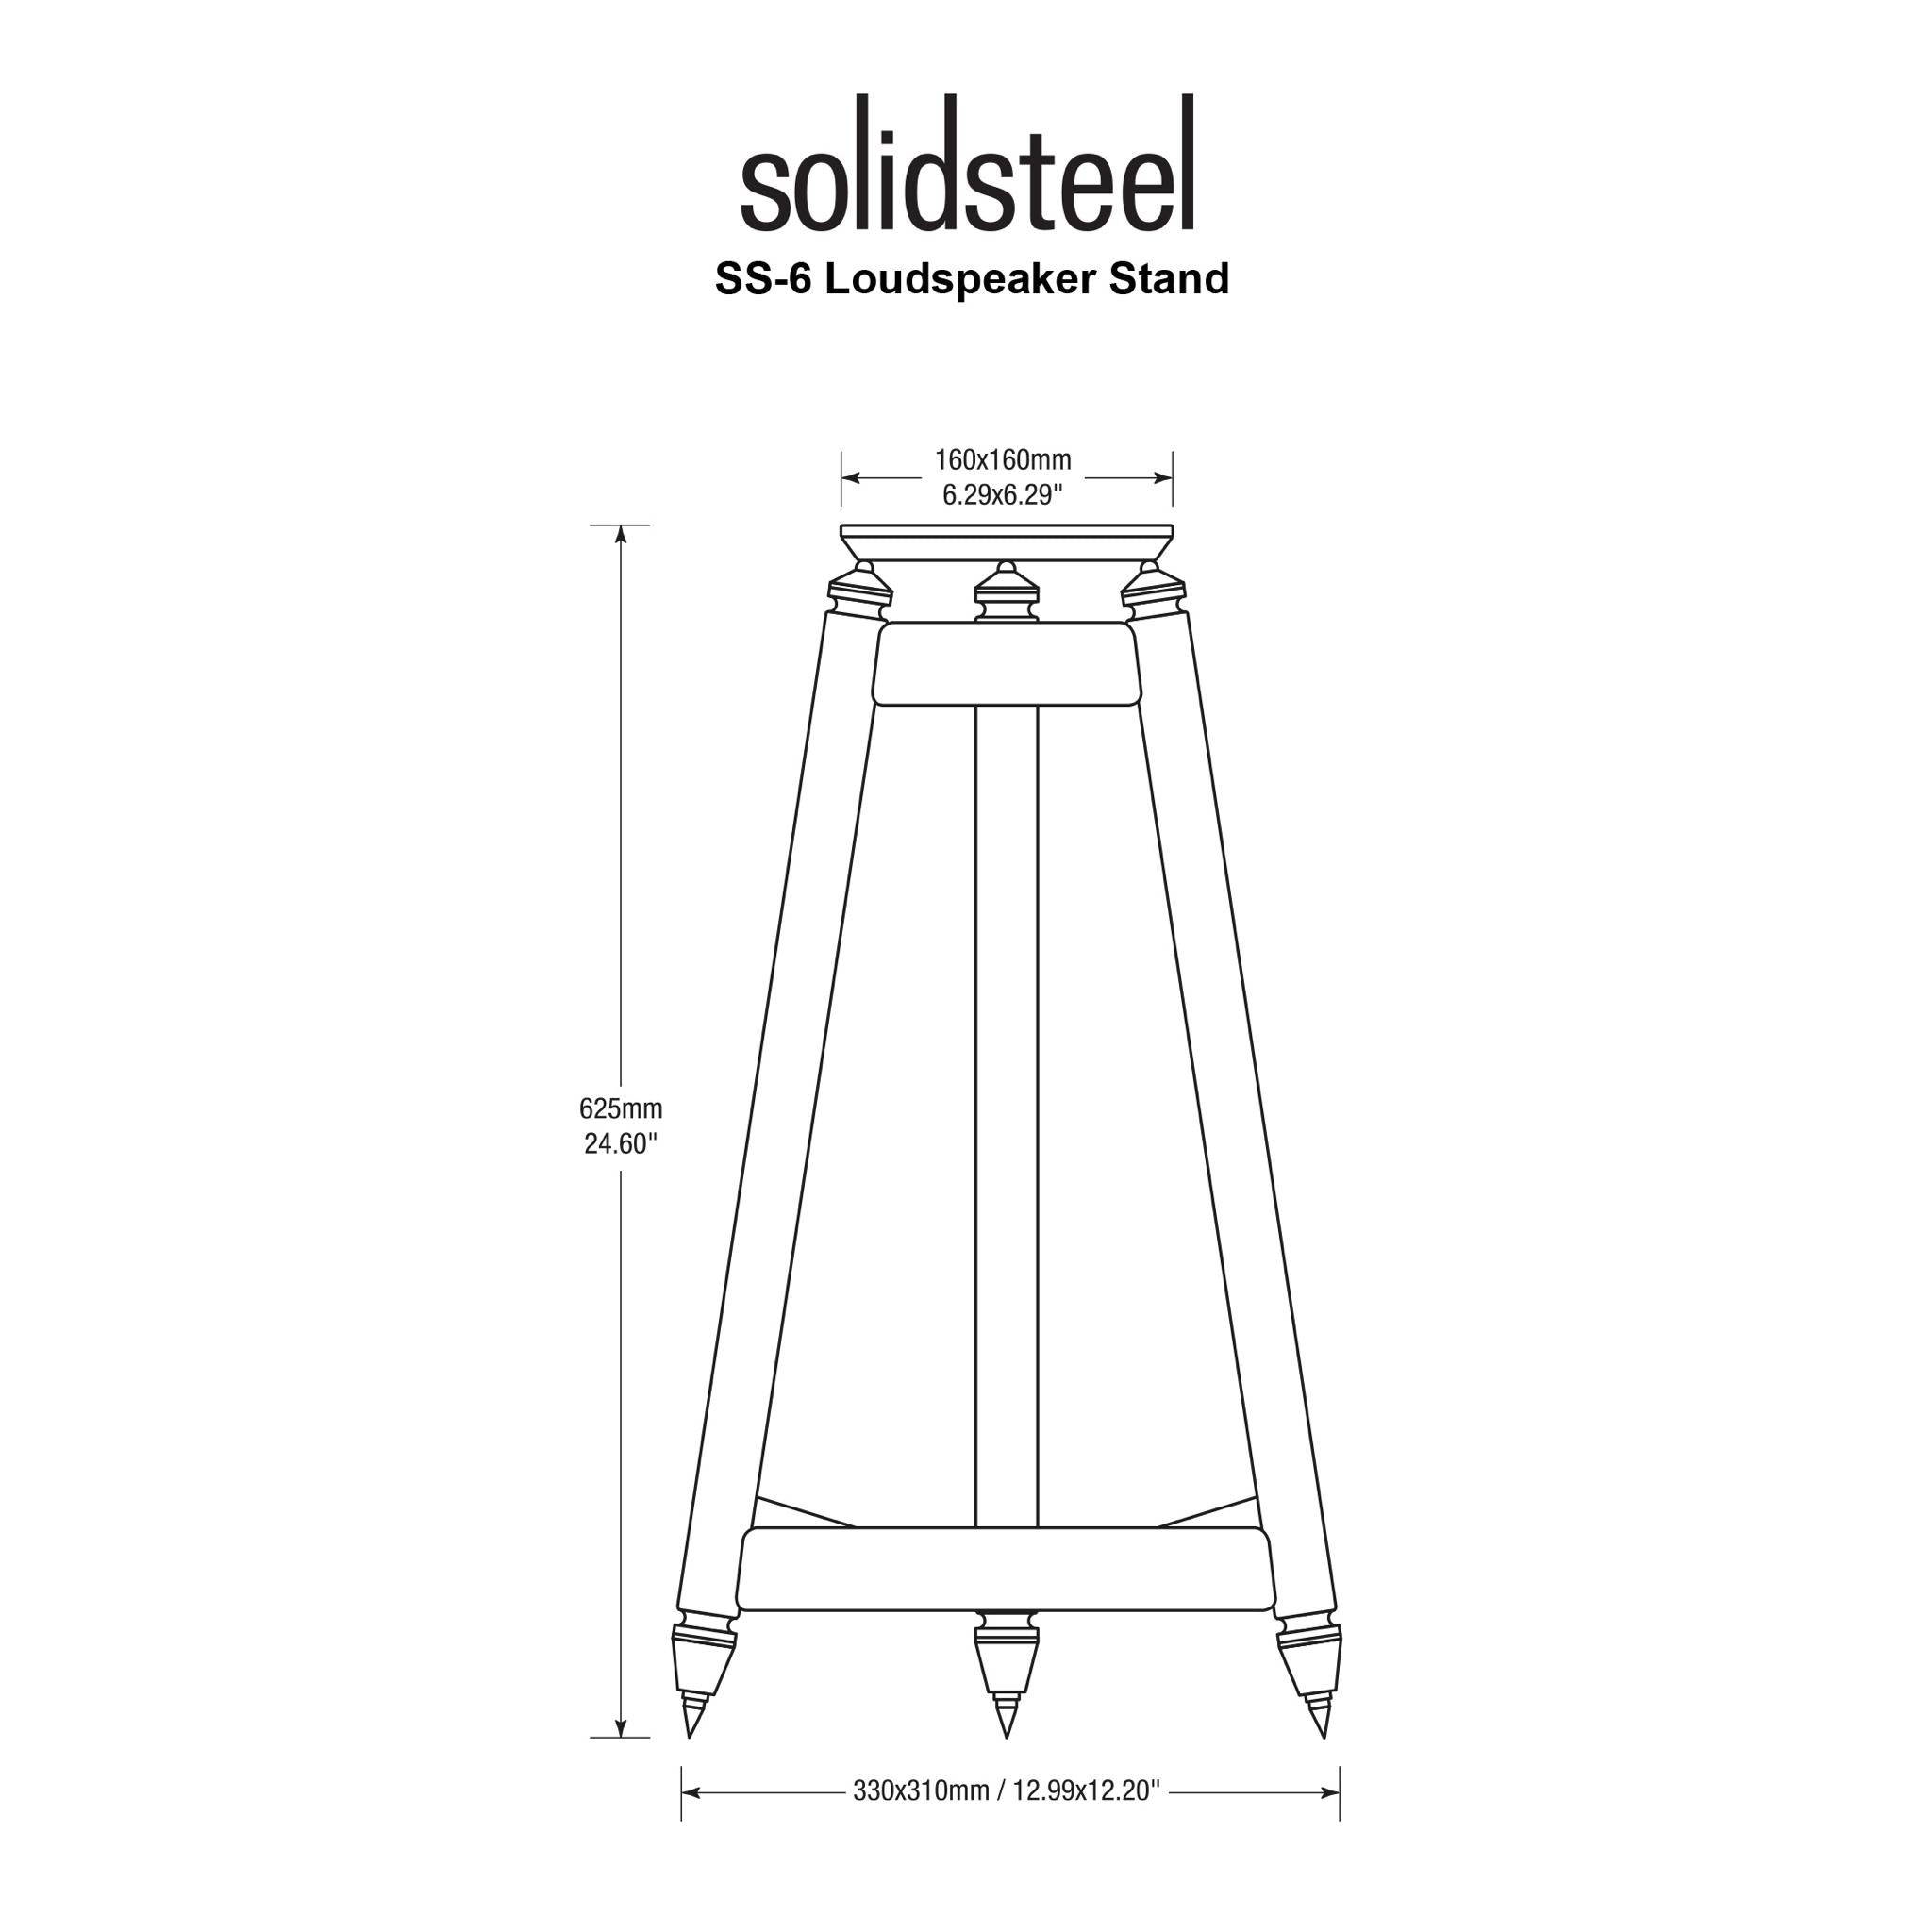 Solidsteel SS Series - Vintage HiFi Speaker Stands - AVStore